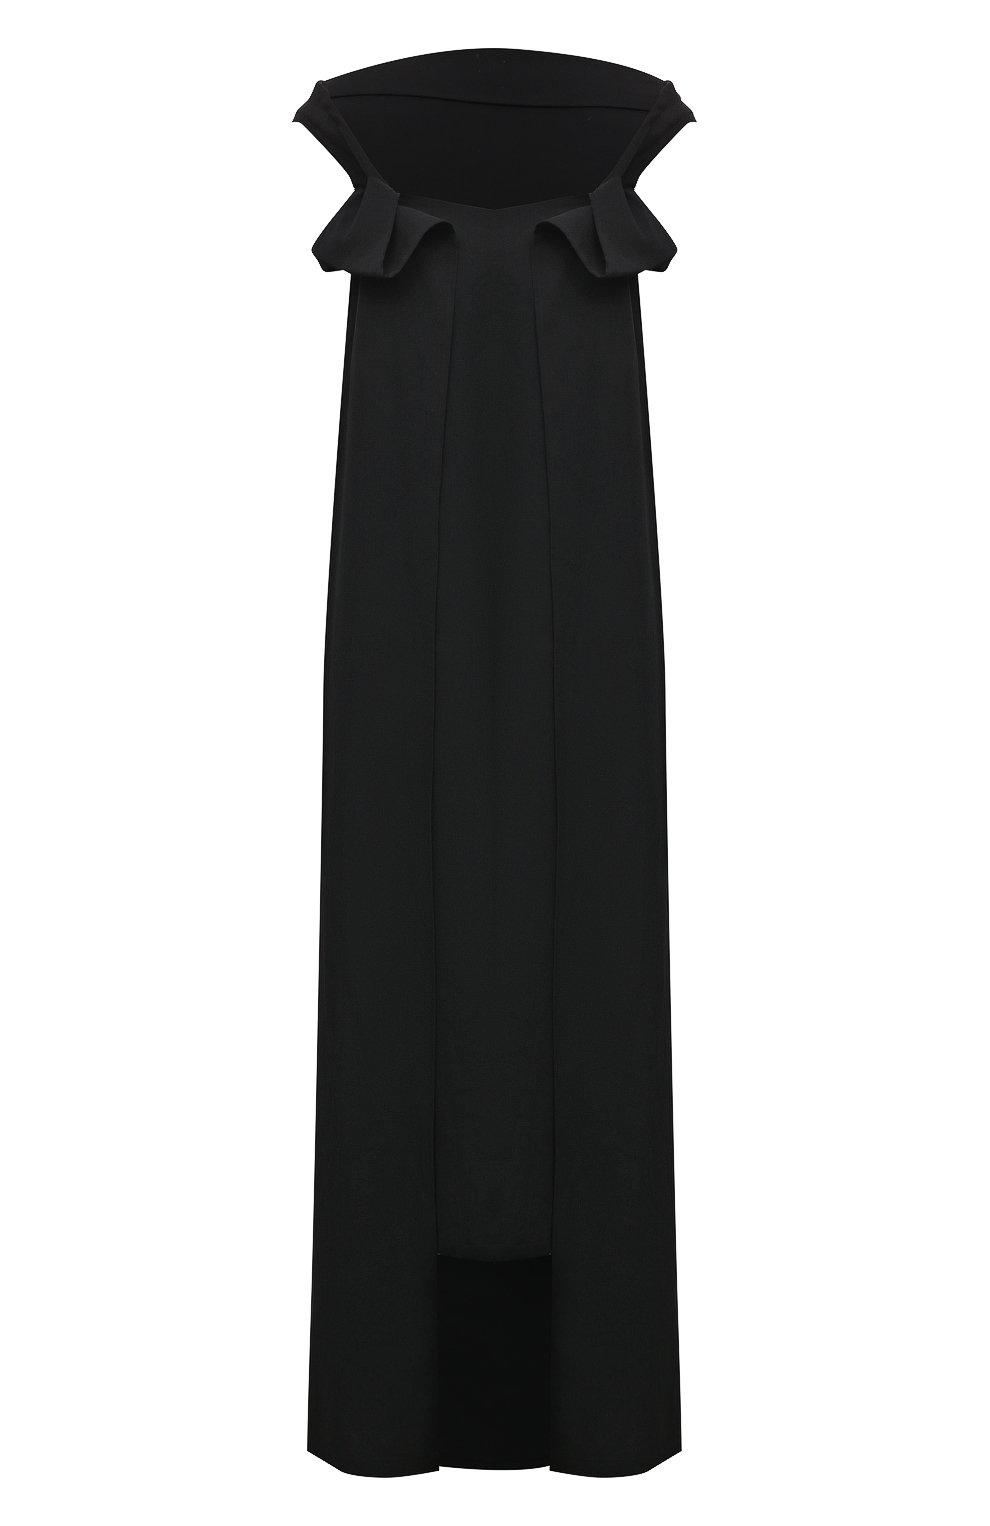 Платья Yohji Yamamoto, Шерстяное платье Yohji Yamamoto, Япония, Чёрный, Шерсть: 100%;, 3960403  - купить